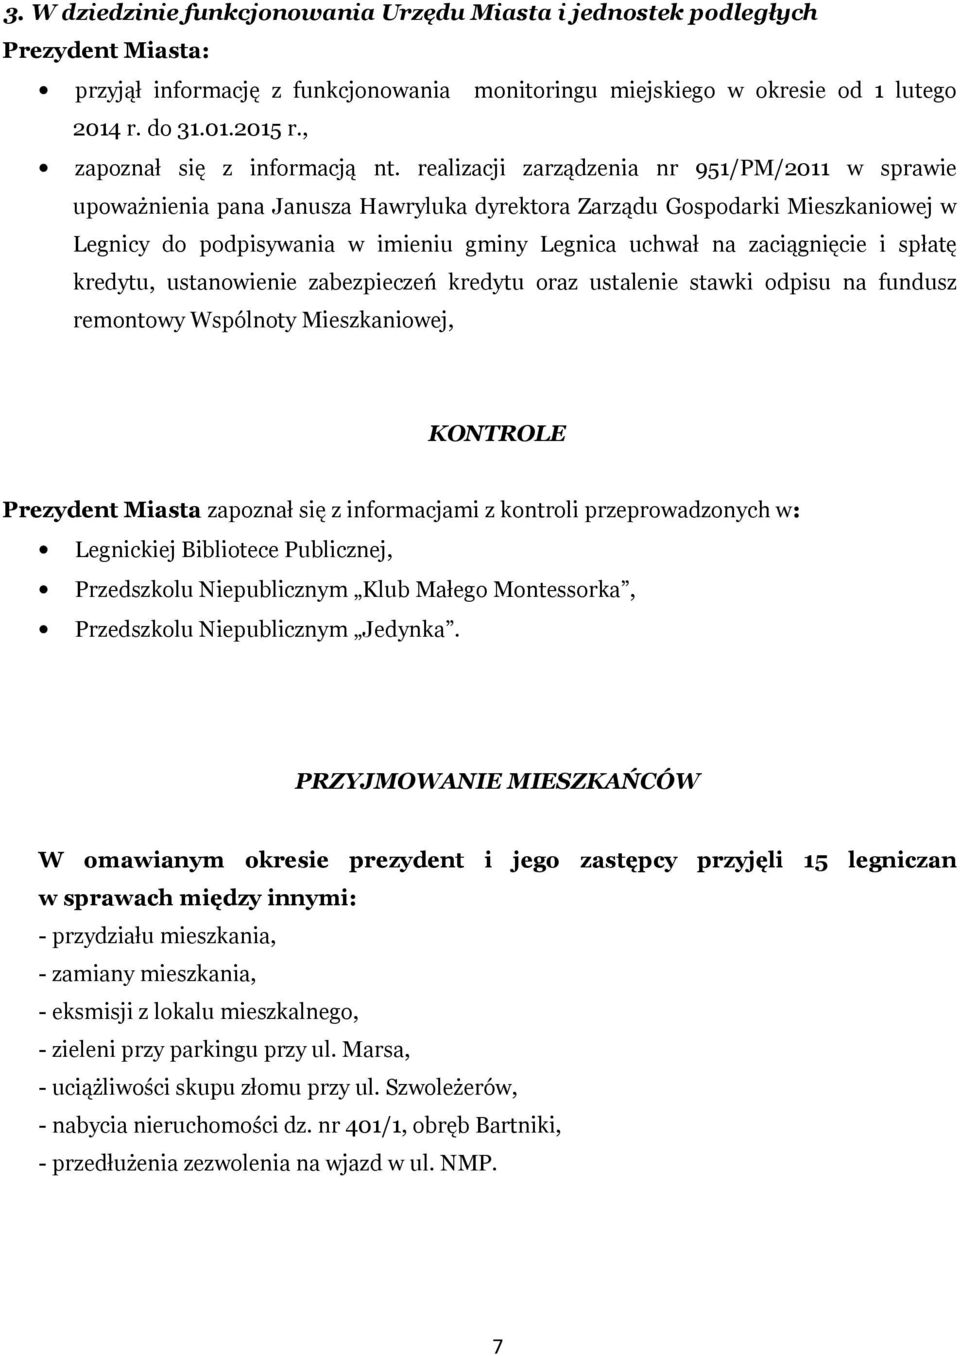 realizacji zarządzenia nr 951/PM/2011 w sprawie upoważnienia pana Janusza Hawryluka dyrektora Zarządu Gospodarki Mieszkaniowej w Legnicy do podpisywania w imieniu gminy Legnica uchwał na zaciągnięcie